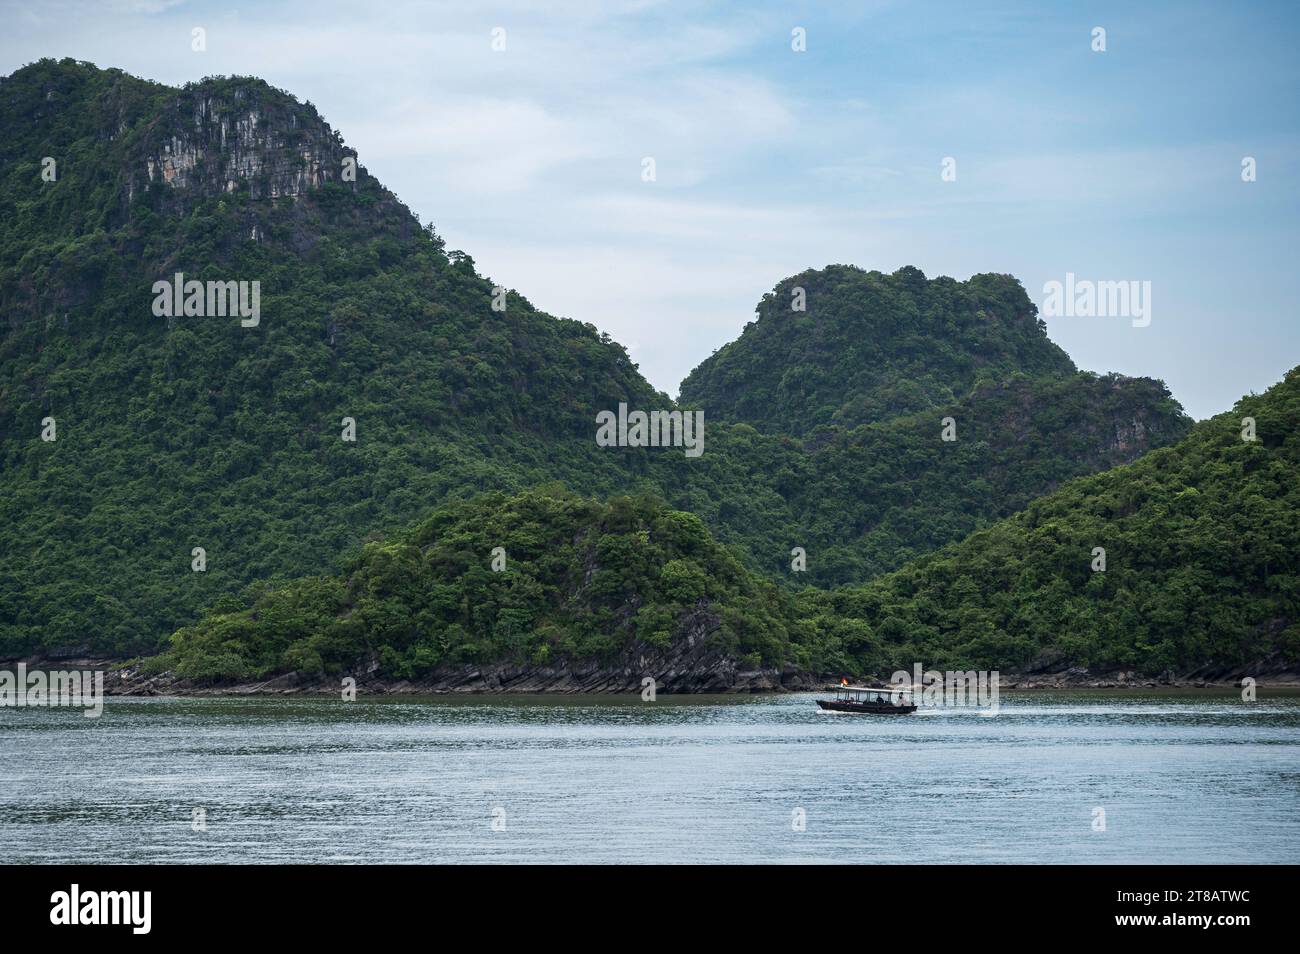 Piccole barche da pesca, nello spettacolare scenario della Baia di ha Long, Vietnam. Una delle moderne meraviglie naturali del mondo. Foto Stock